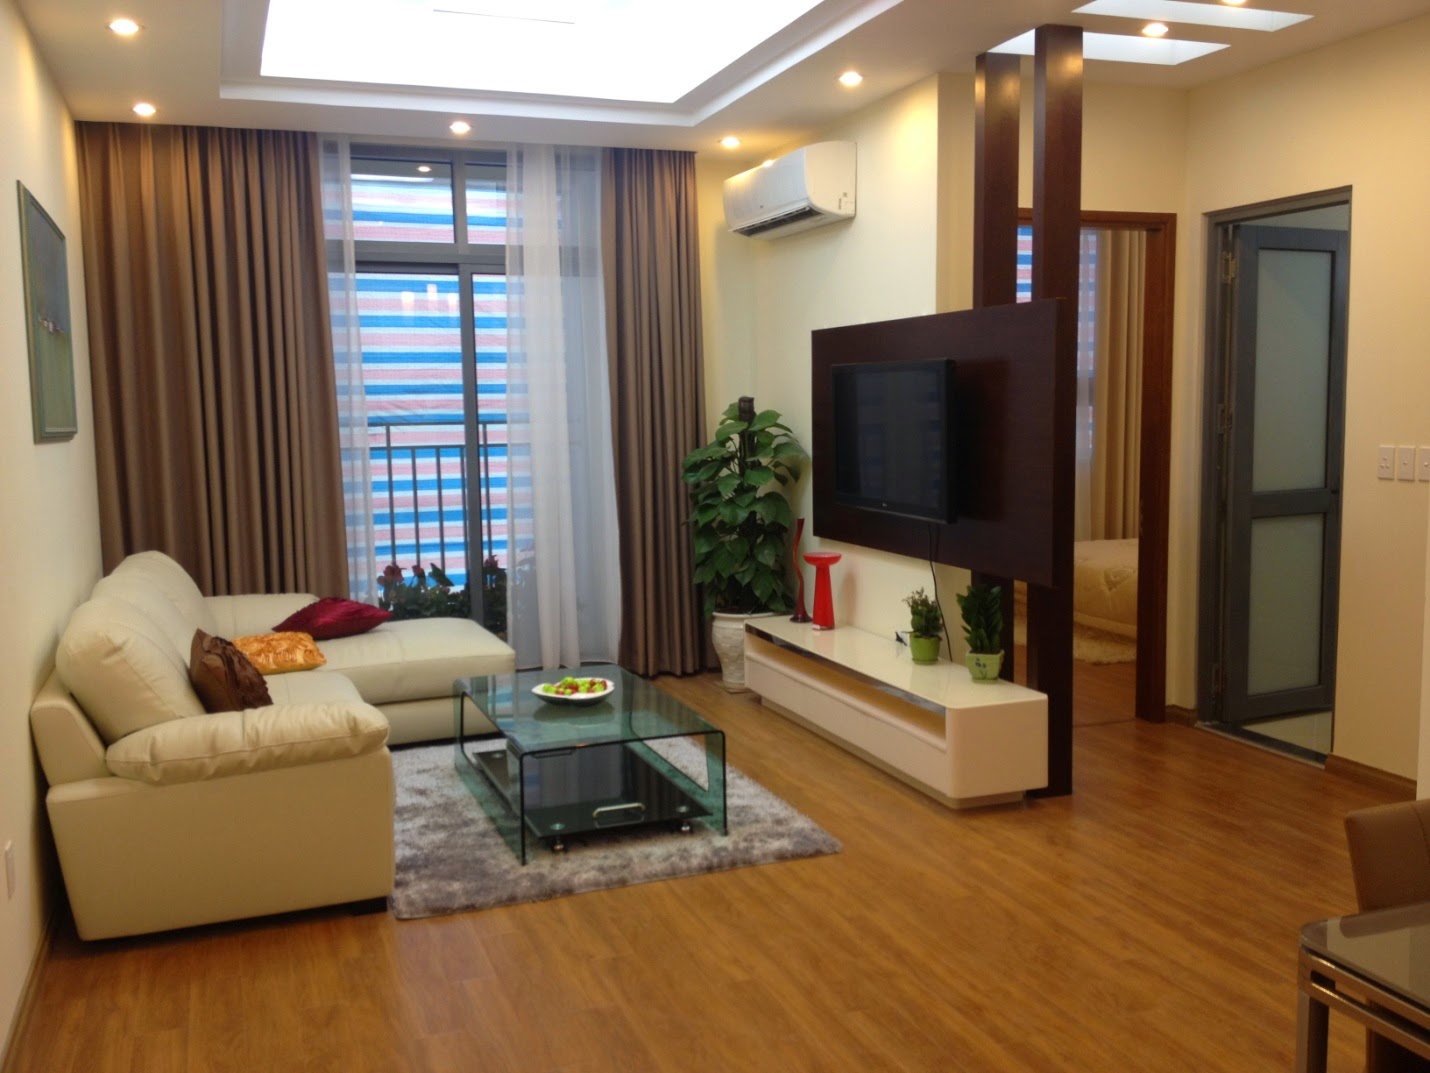 Chuyển nhà chung cư giá rẻ tại Hà Nội